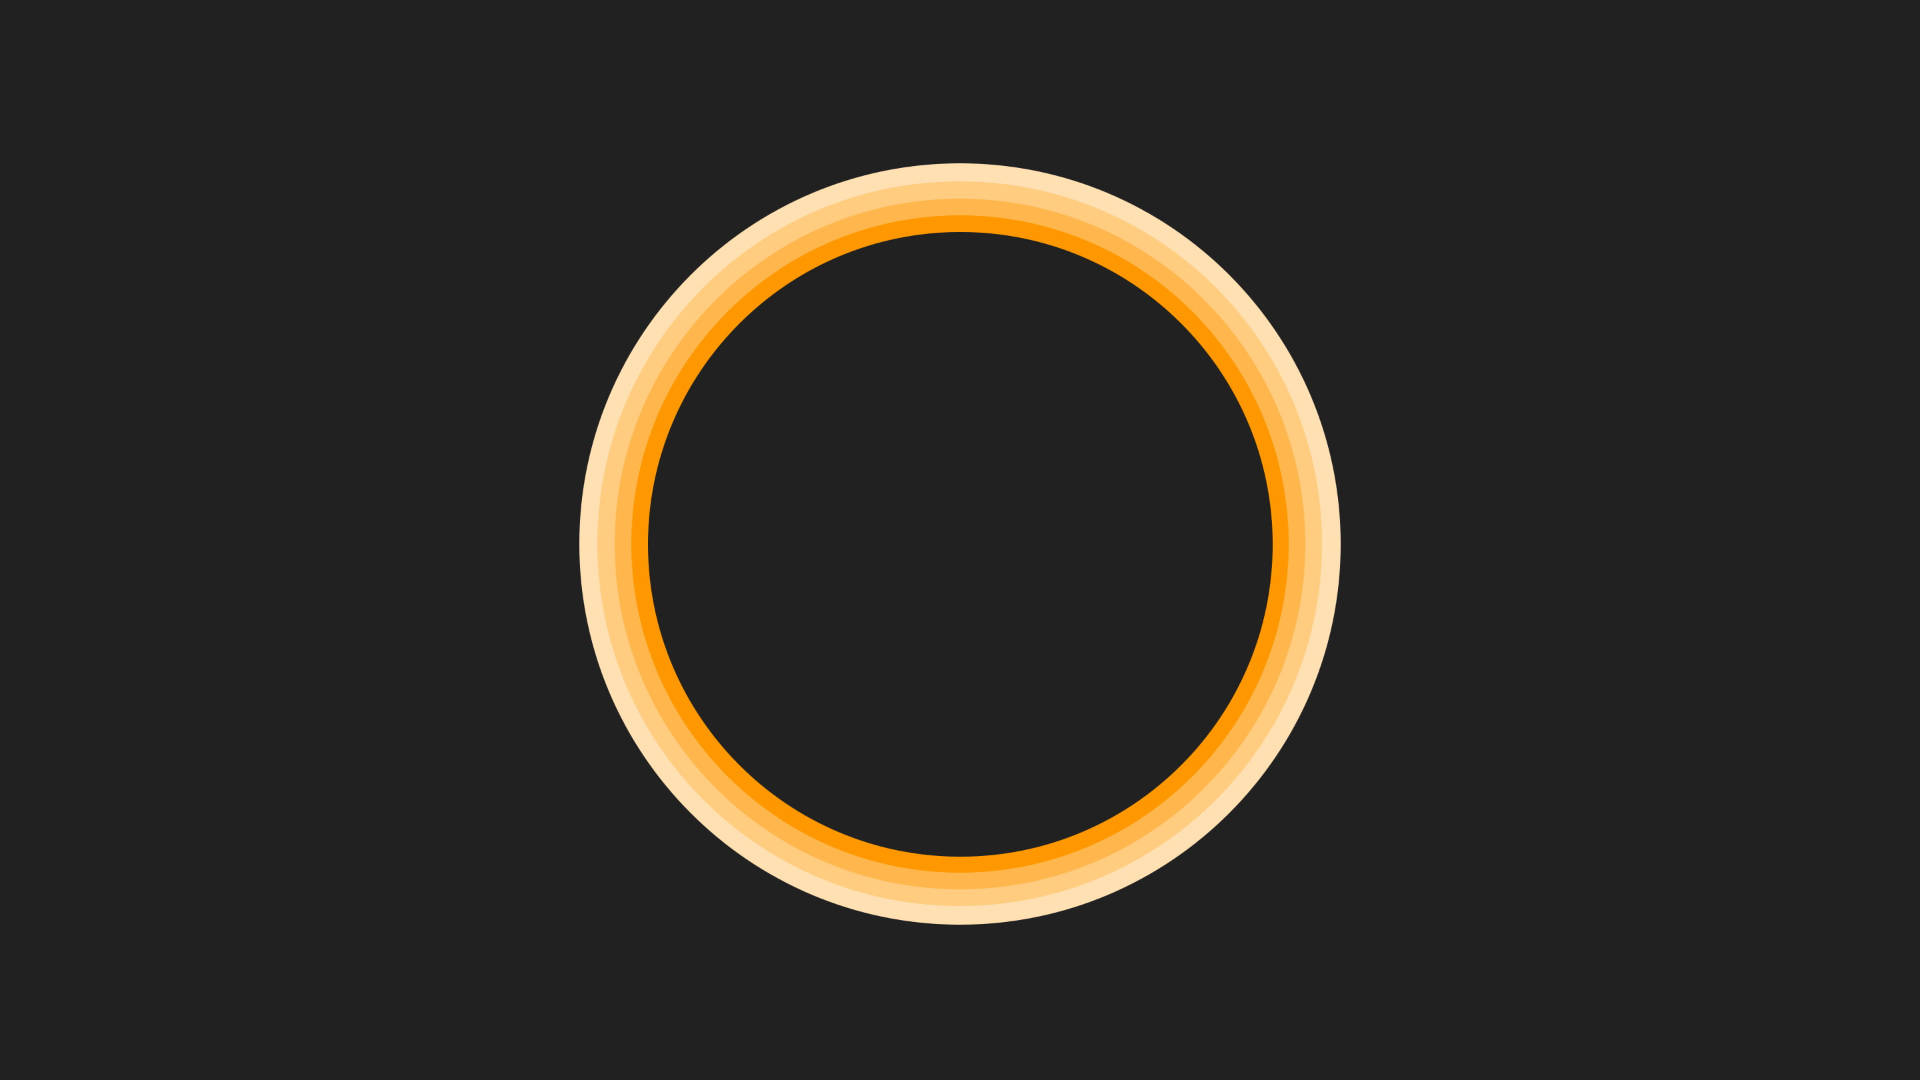 Orange Circle On Black Background